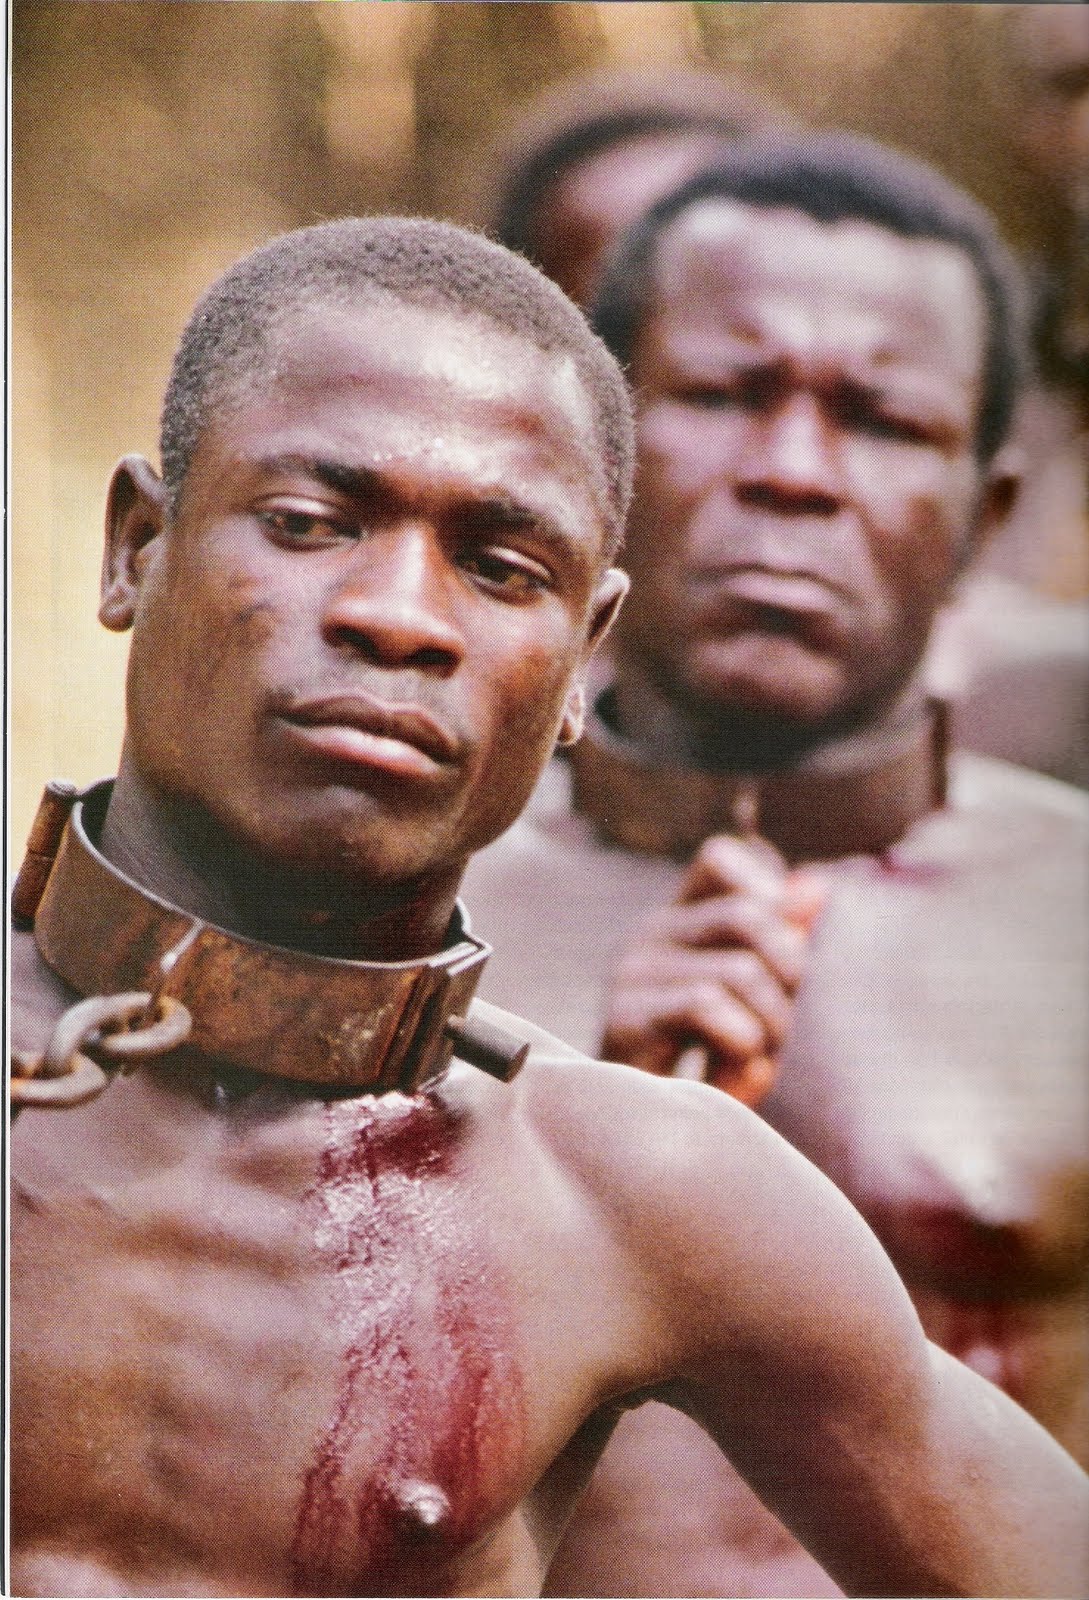 "A história da escravidão africana na América é um abismo de degradação e miséria..."Joaquim Nabuco